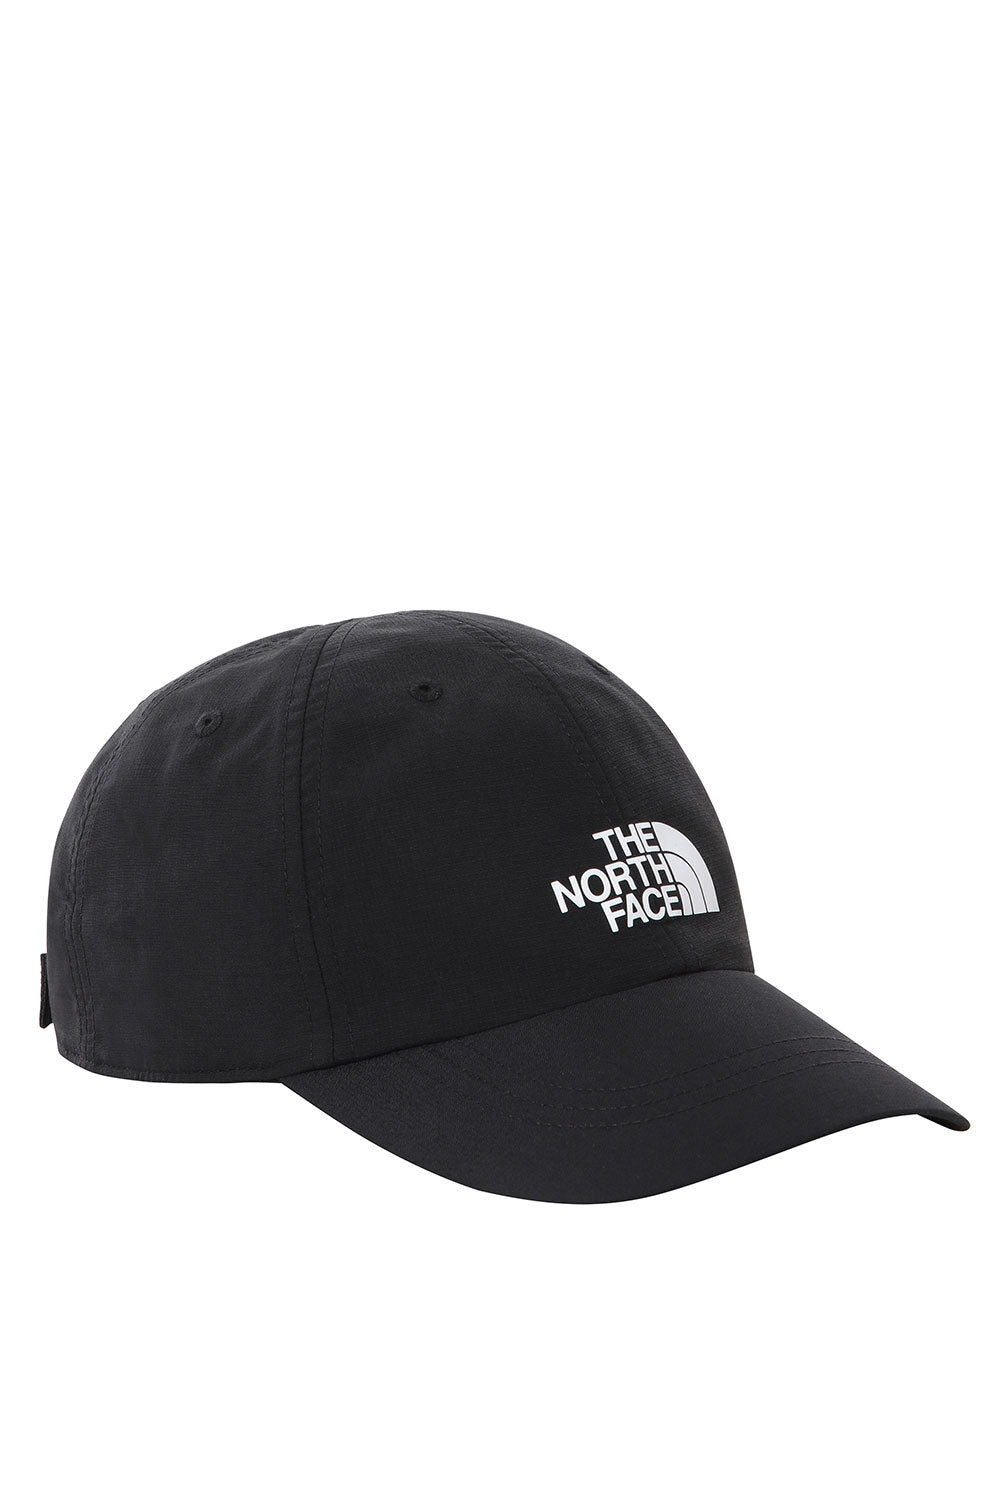 דה נורת' פייס כובע מצחיה Horizon בצבע שחור לגברים-The North Face-One Size-נאקו